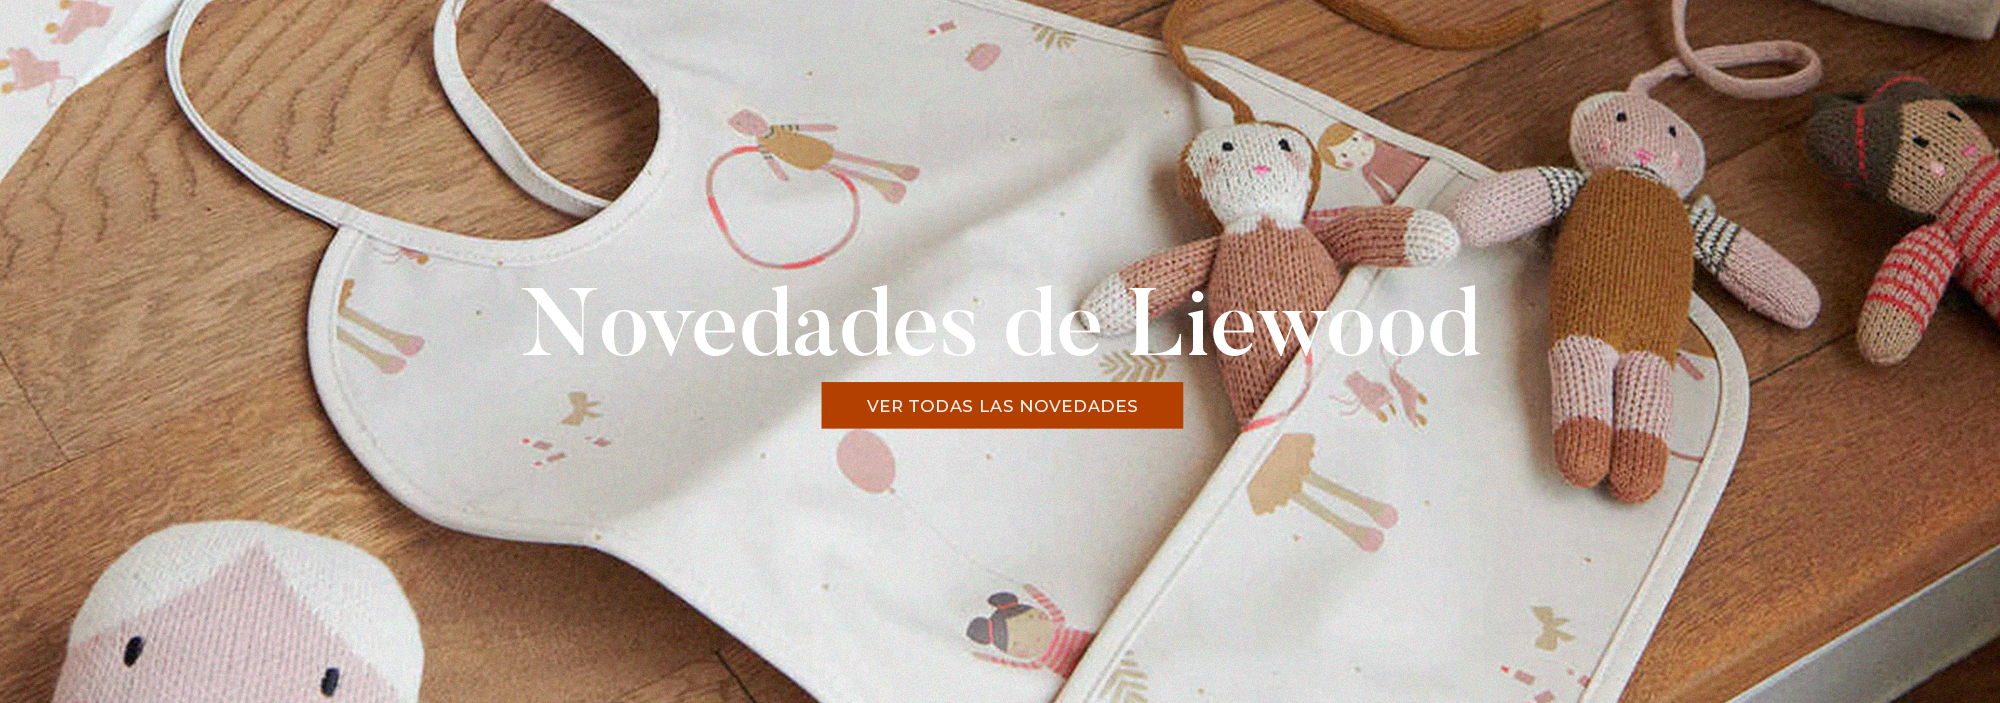 La-Colmena-Novedades-Liewwod-Web